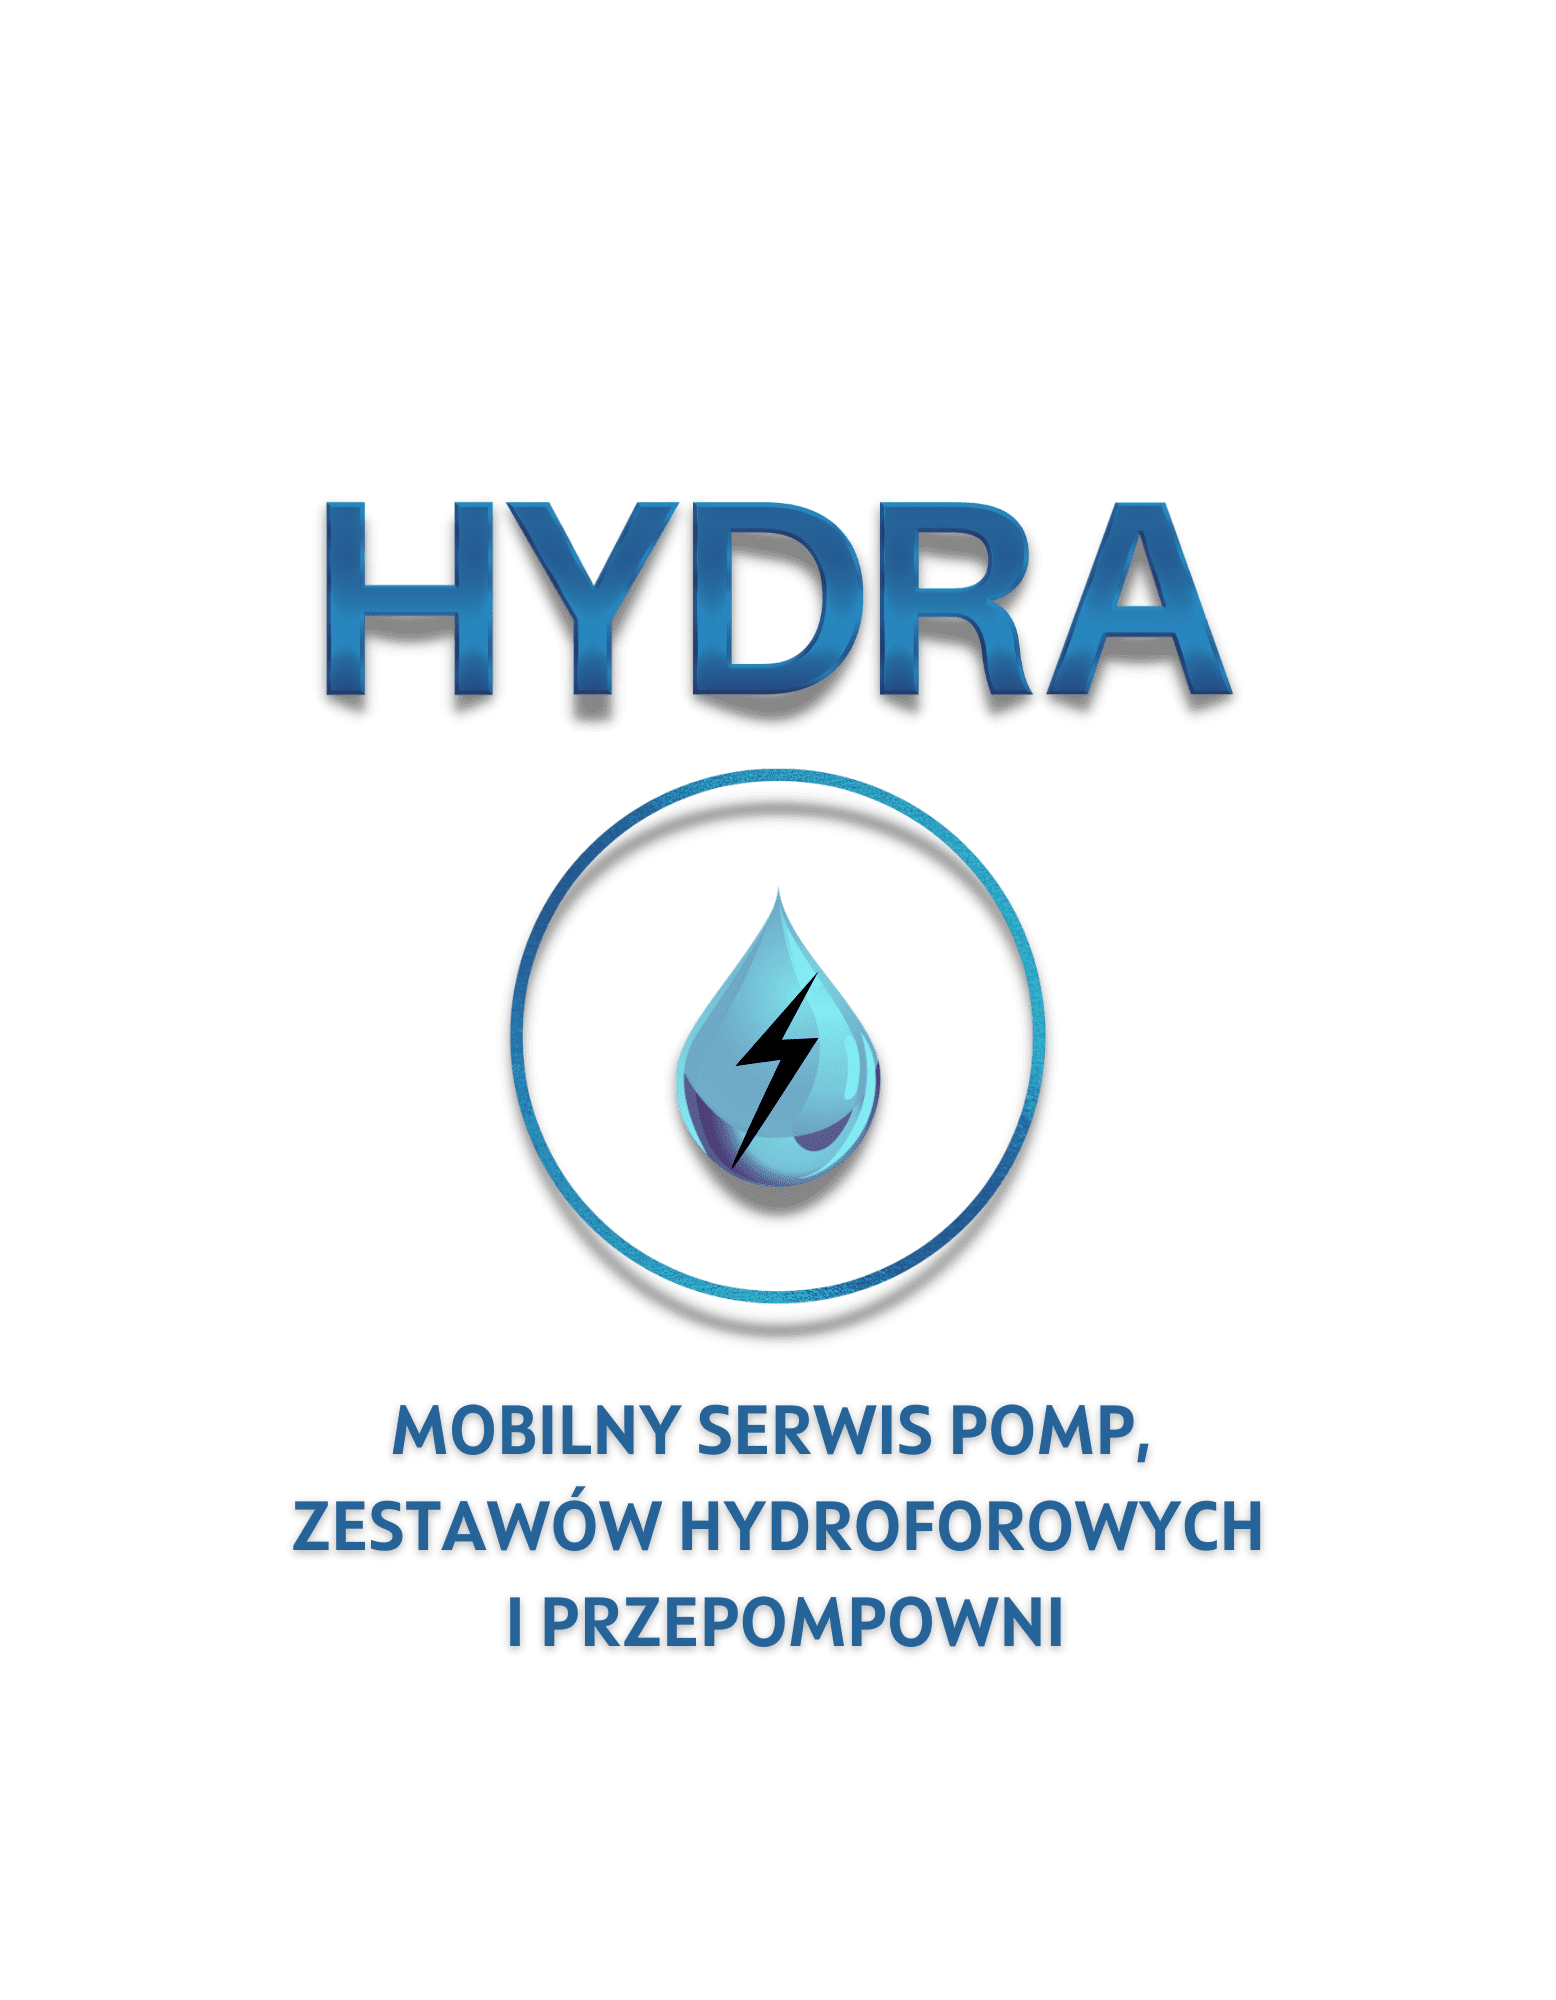 Hydra mobilny serwis pomp, zestawów hydroforowych i przepompowni